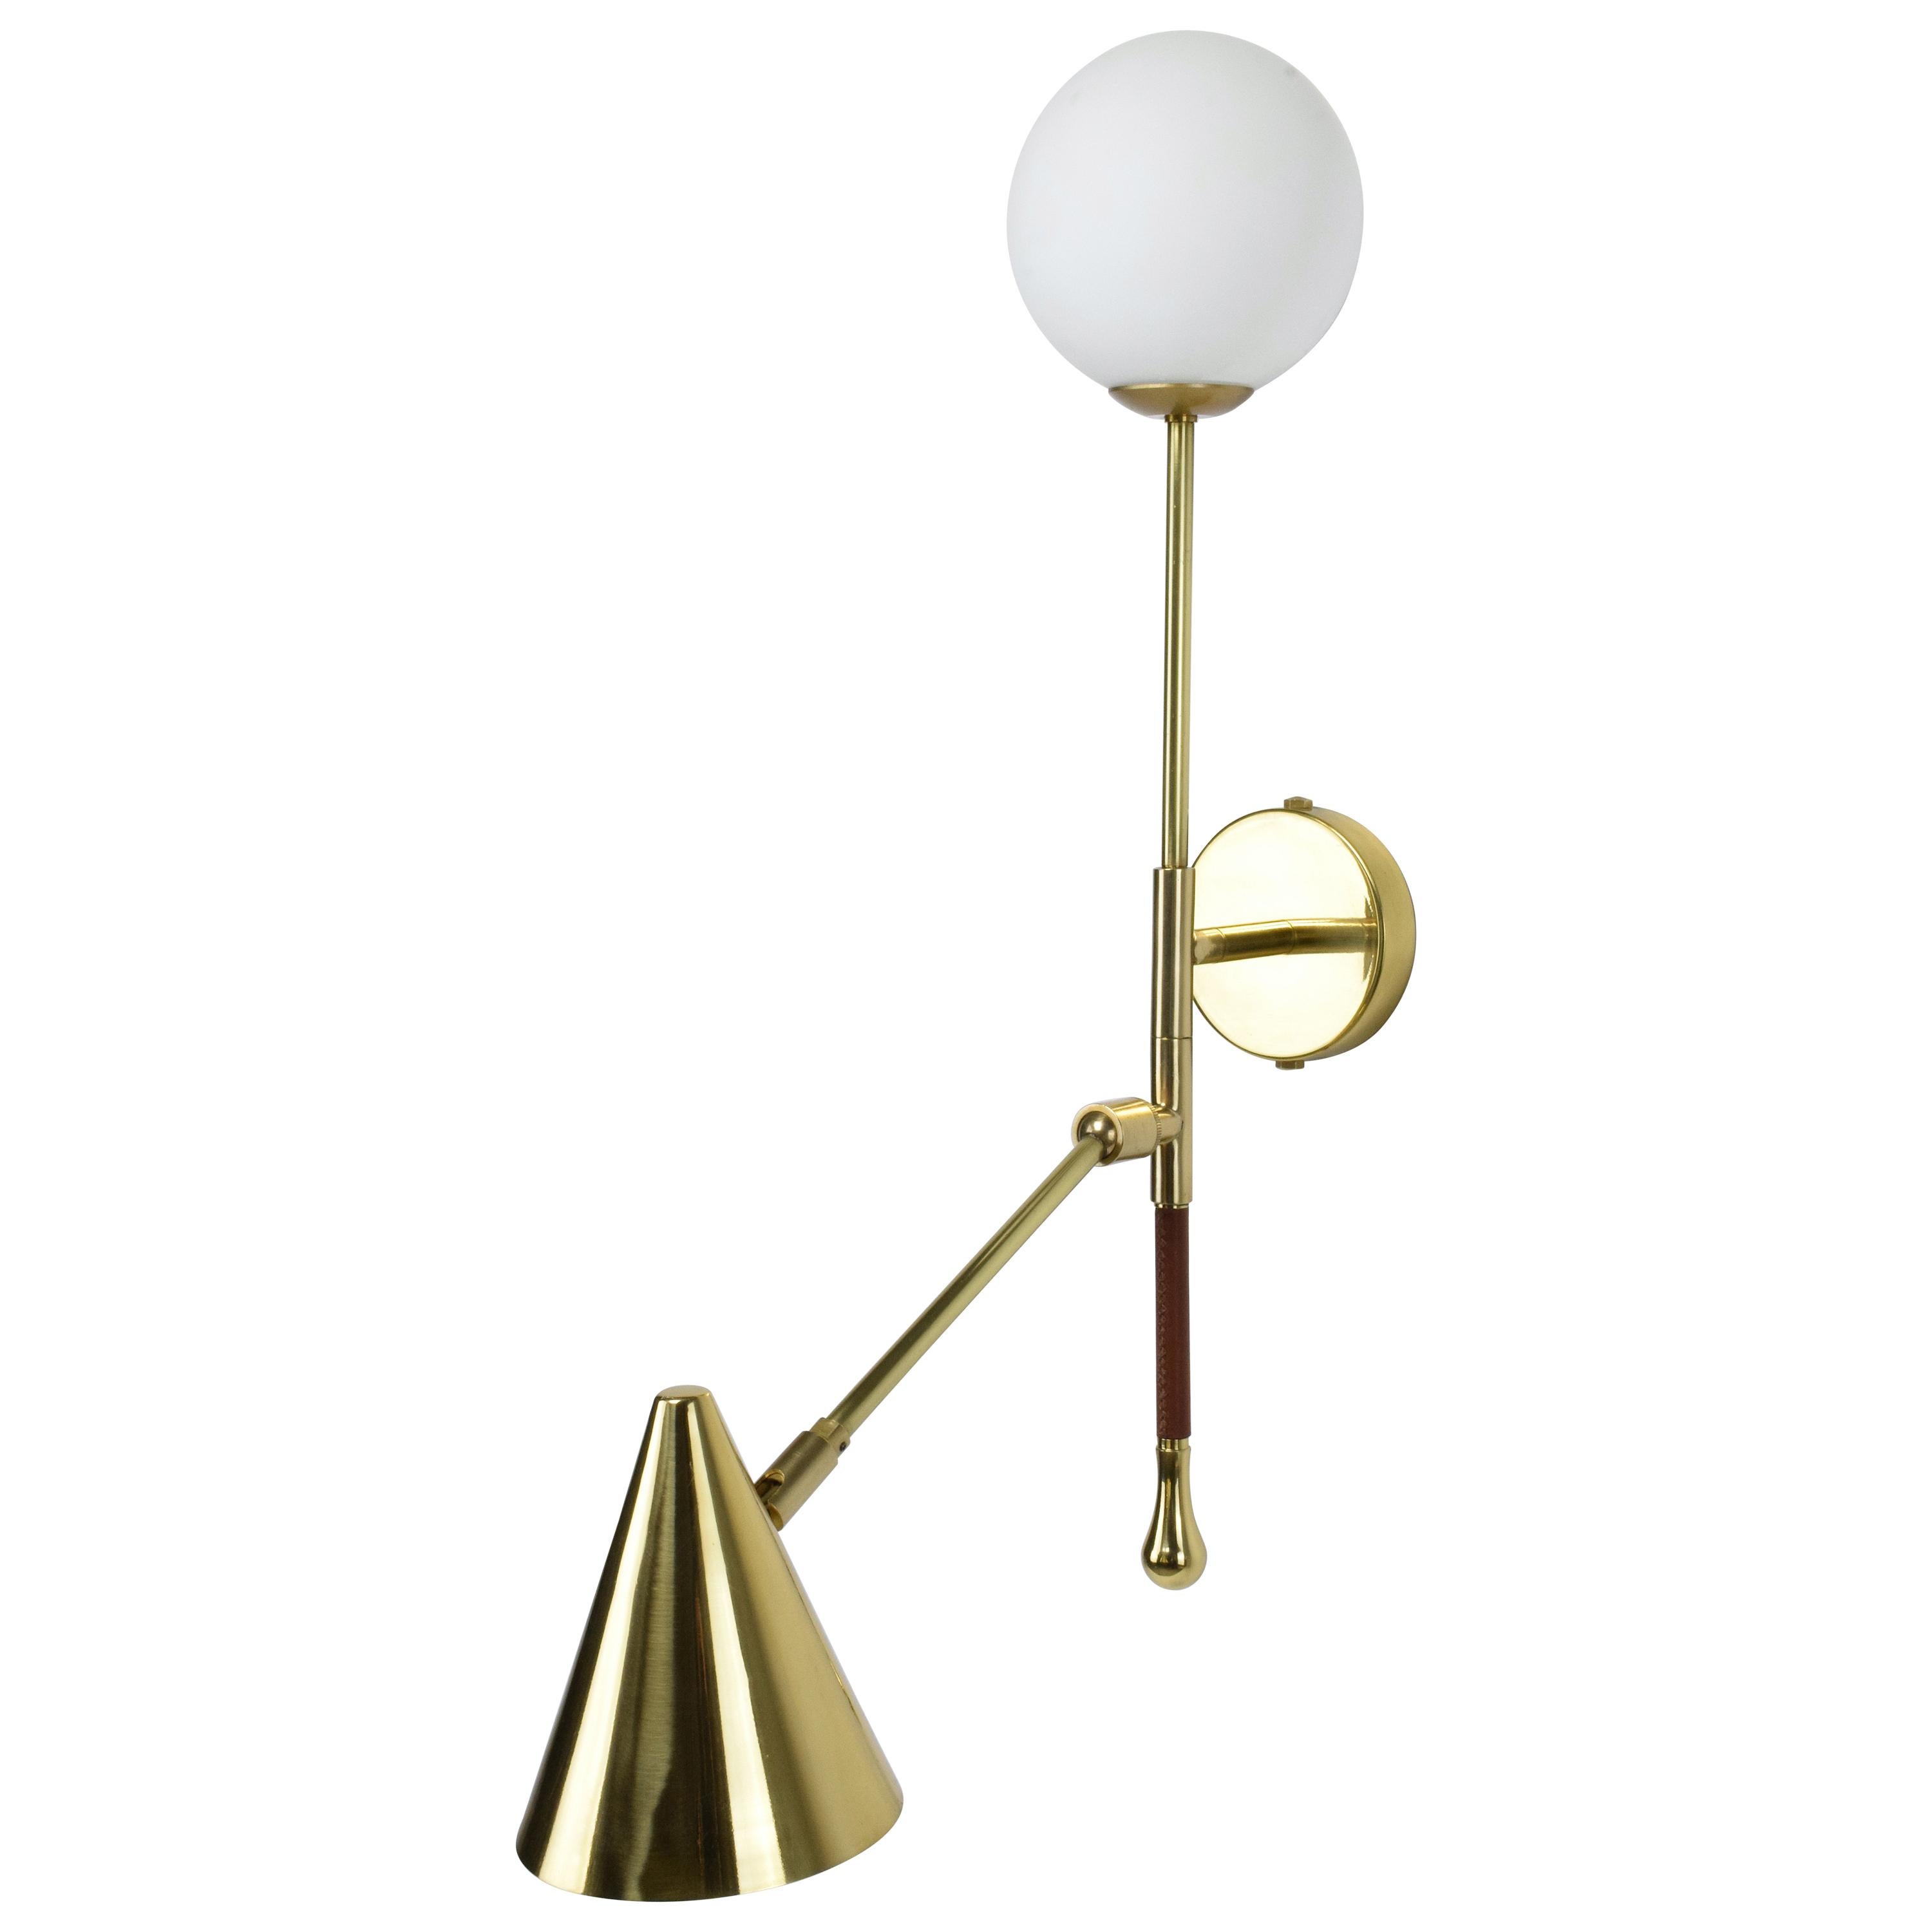 Modern De.Light W1 Contemporary Brass Articulating Double Wall Light, Flow Collection